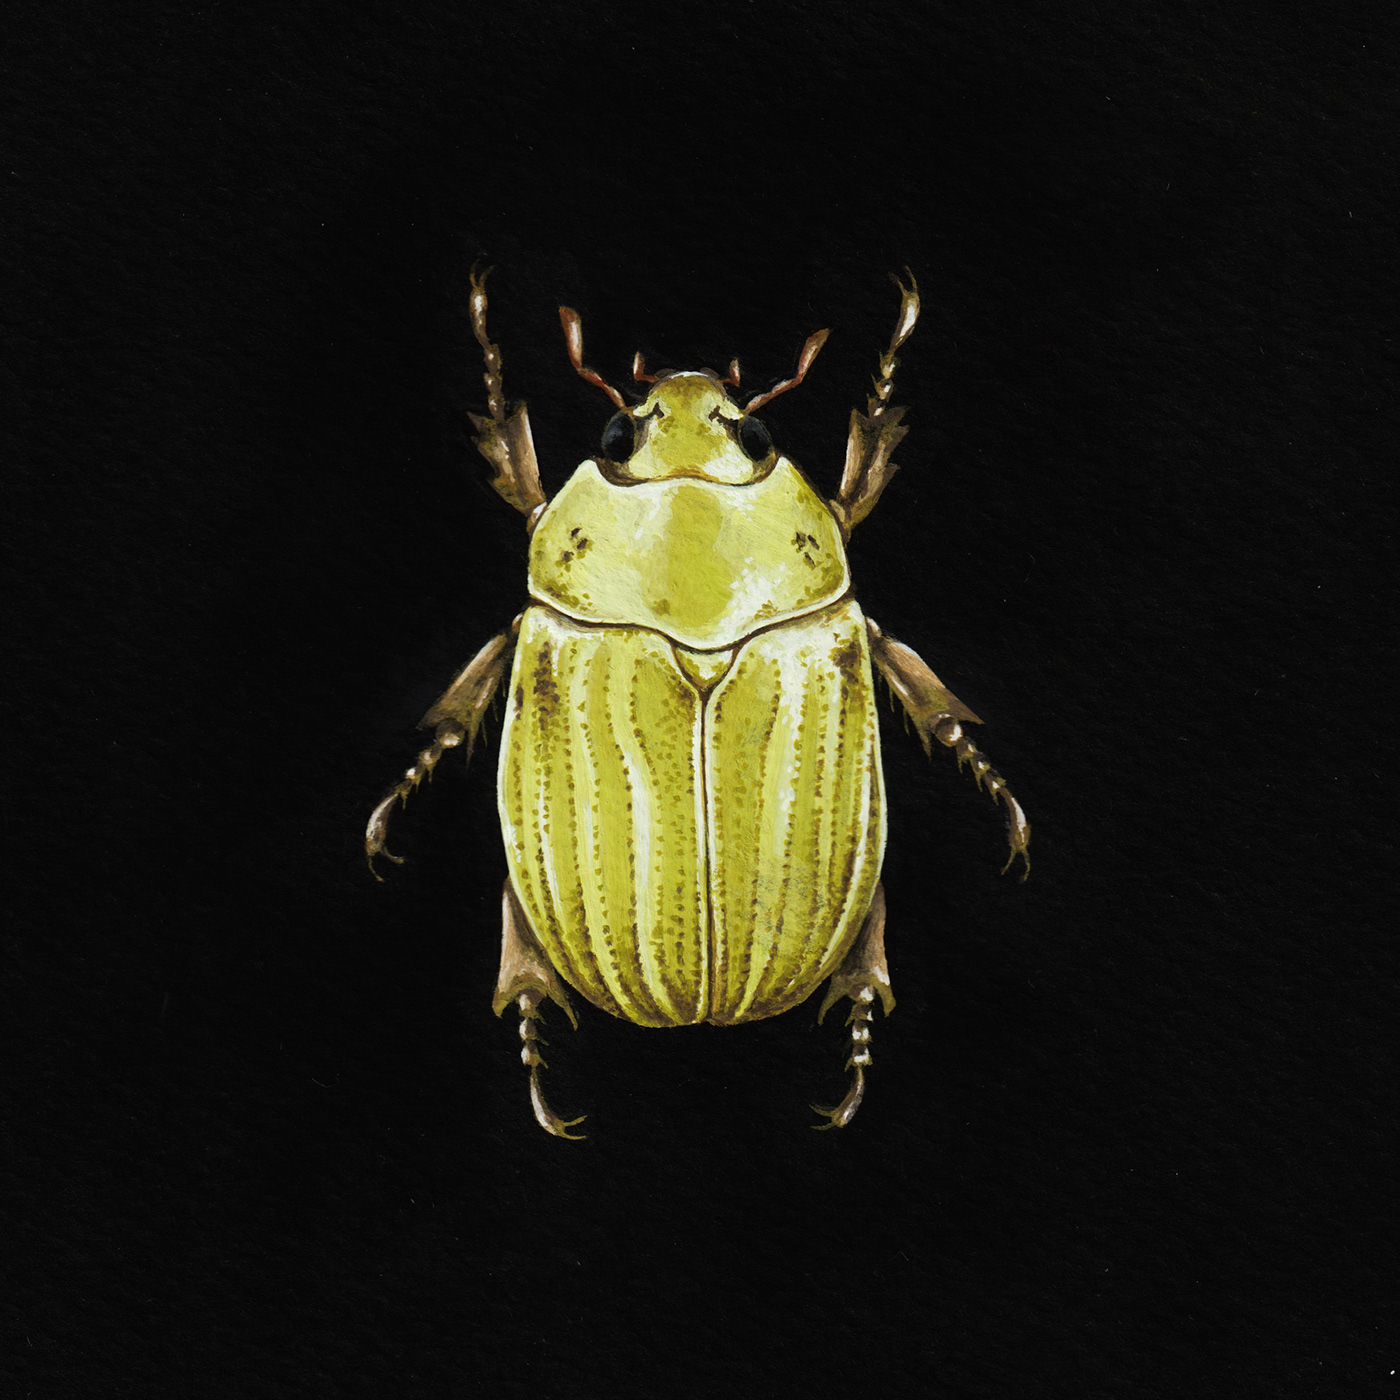 Goauche ilustracion ilustración naturalista insectos